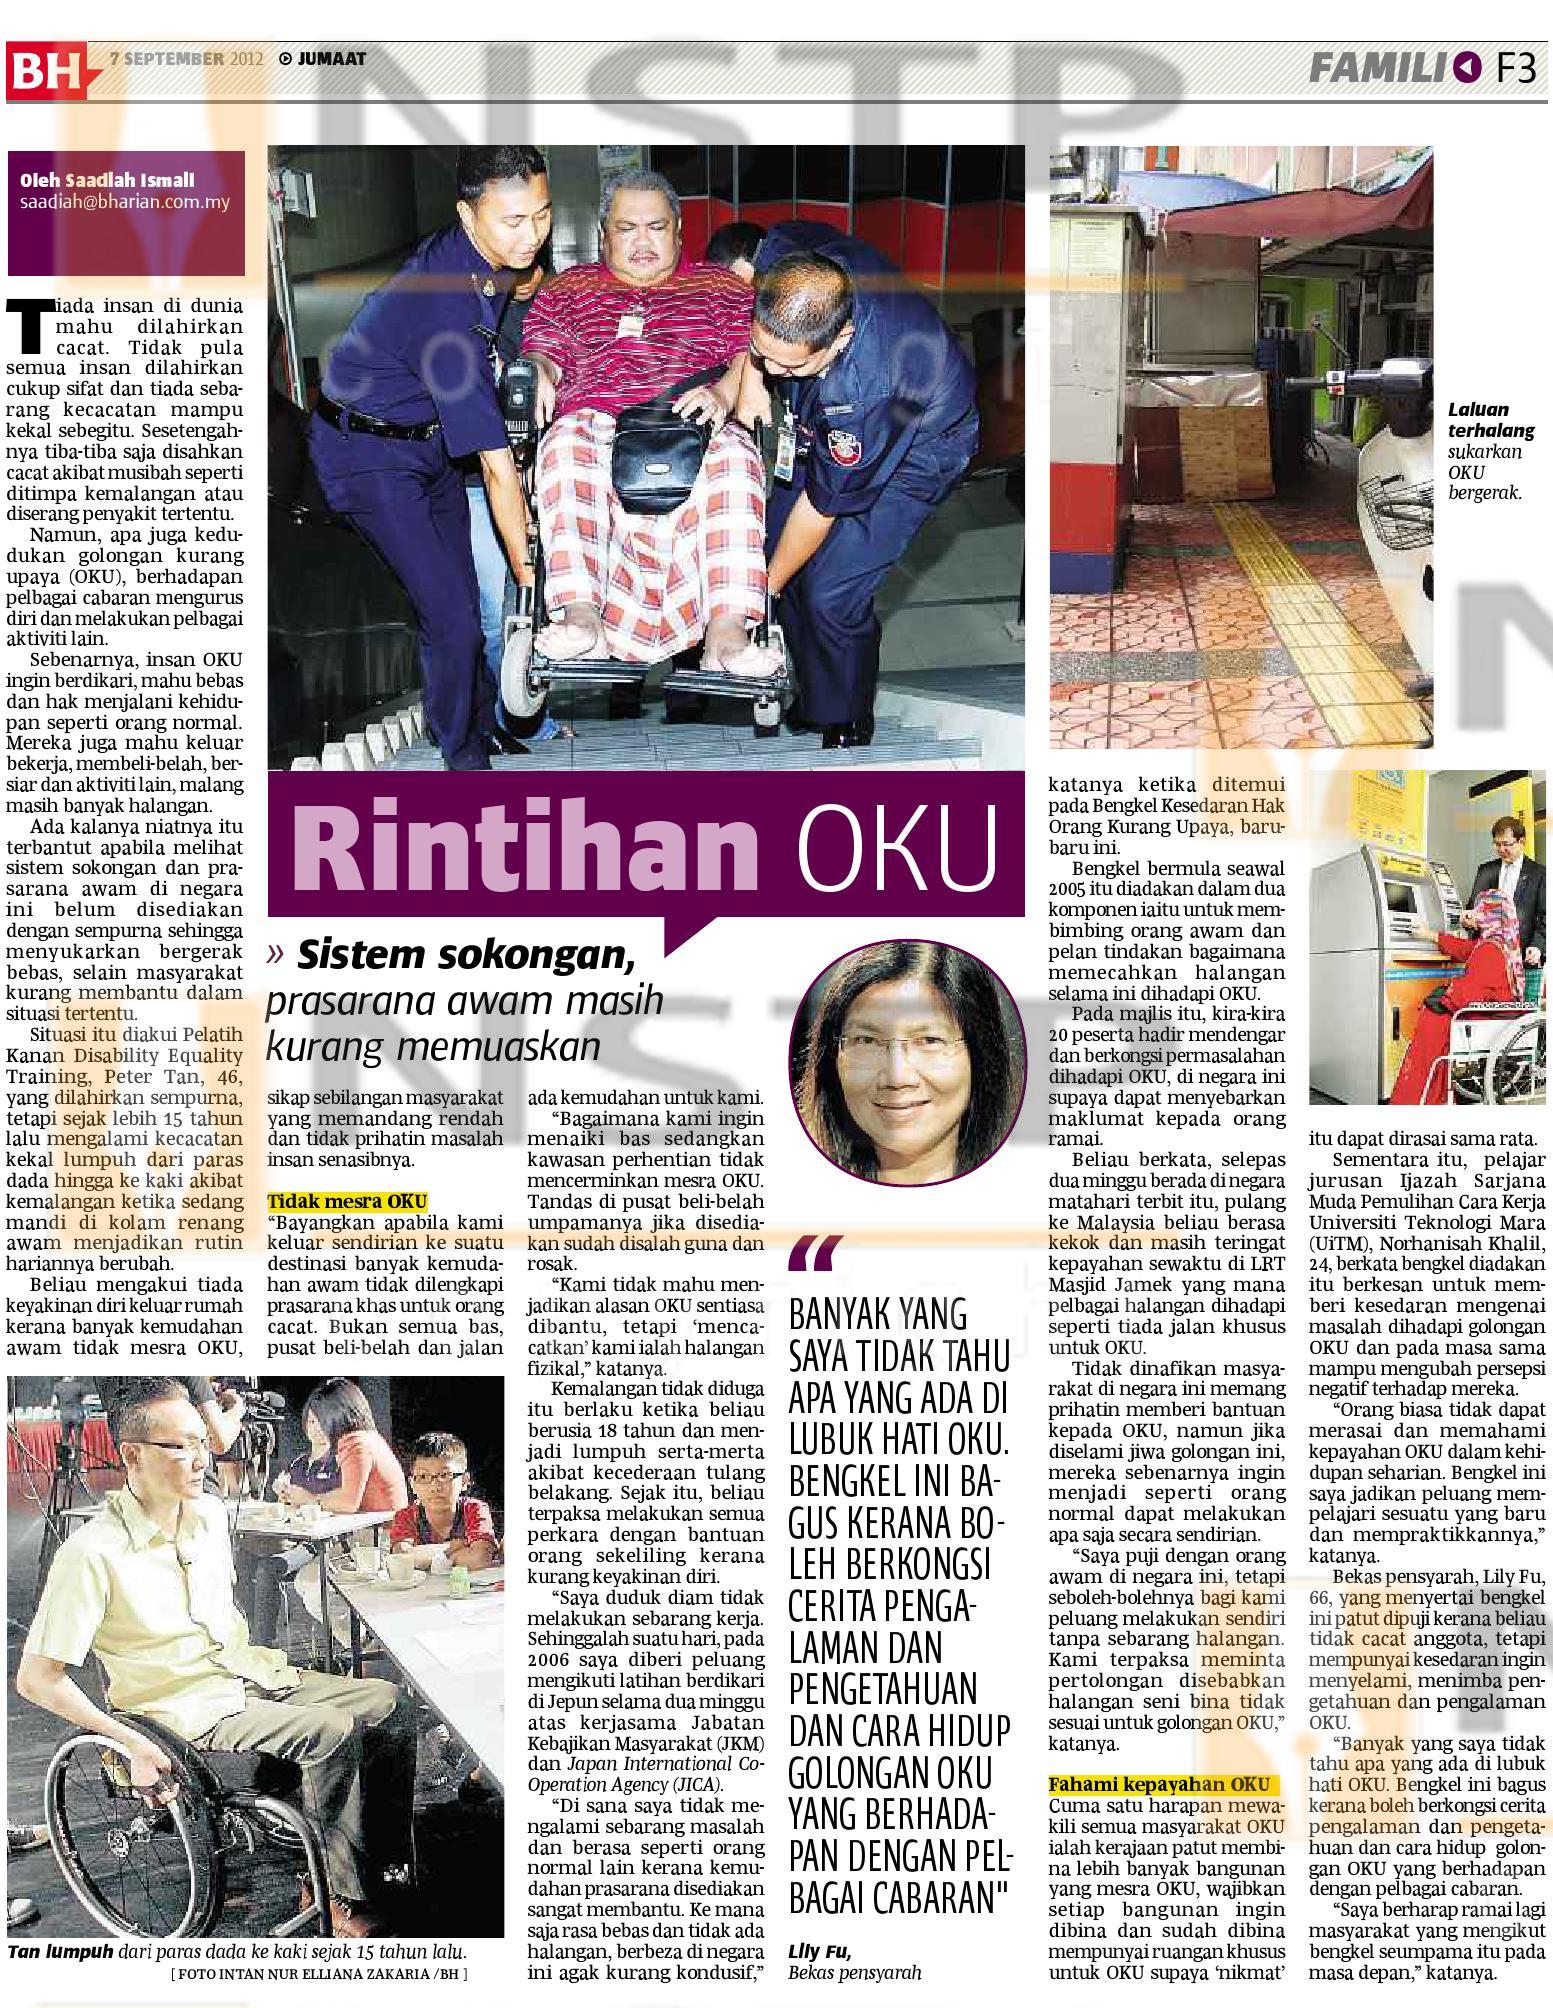 Article in Berita Harian on DET workshop held at Black Box, MAP@Publika